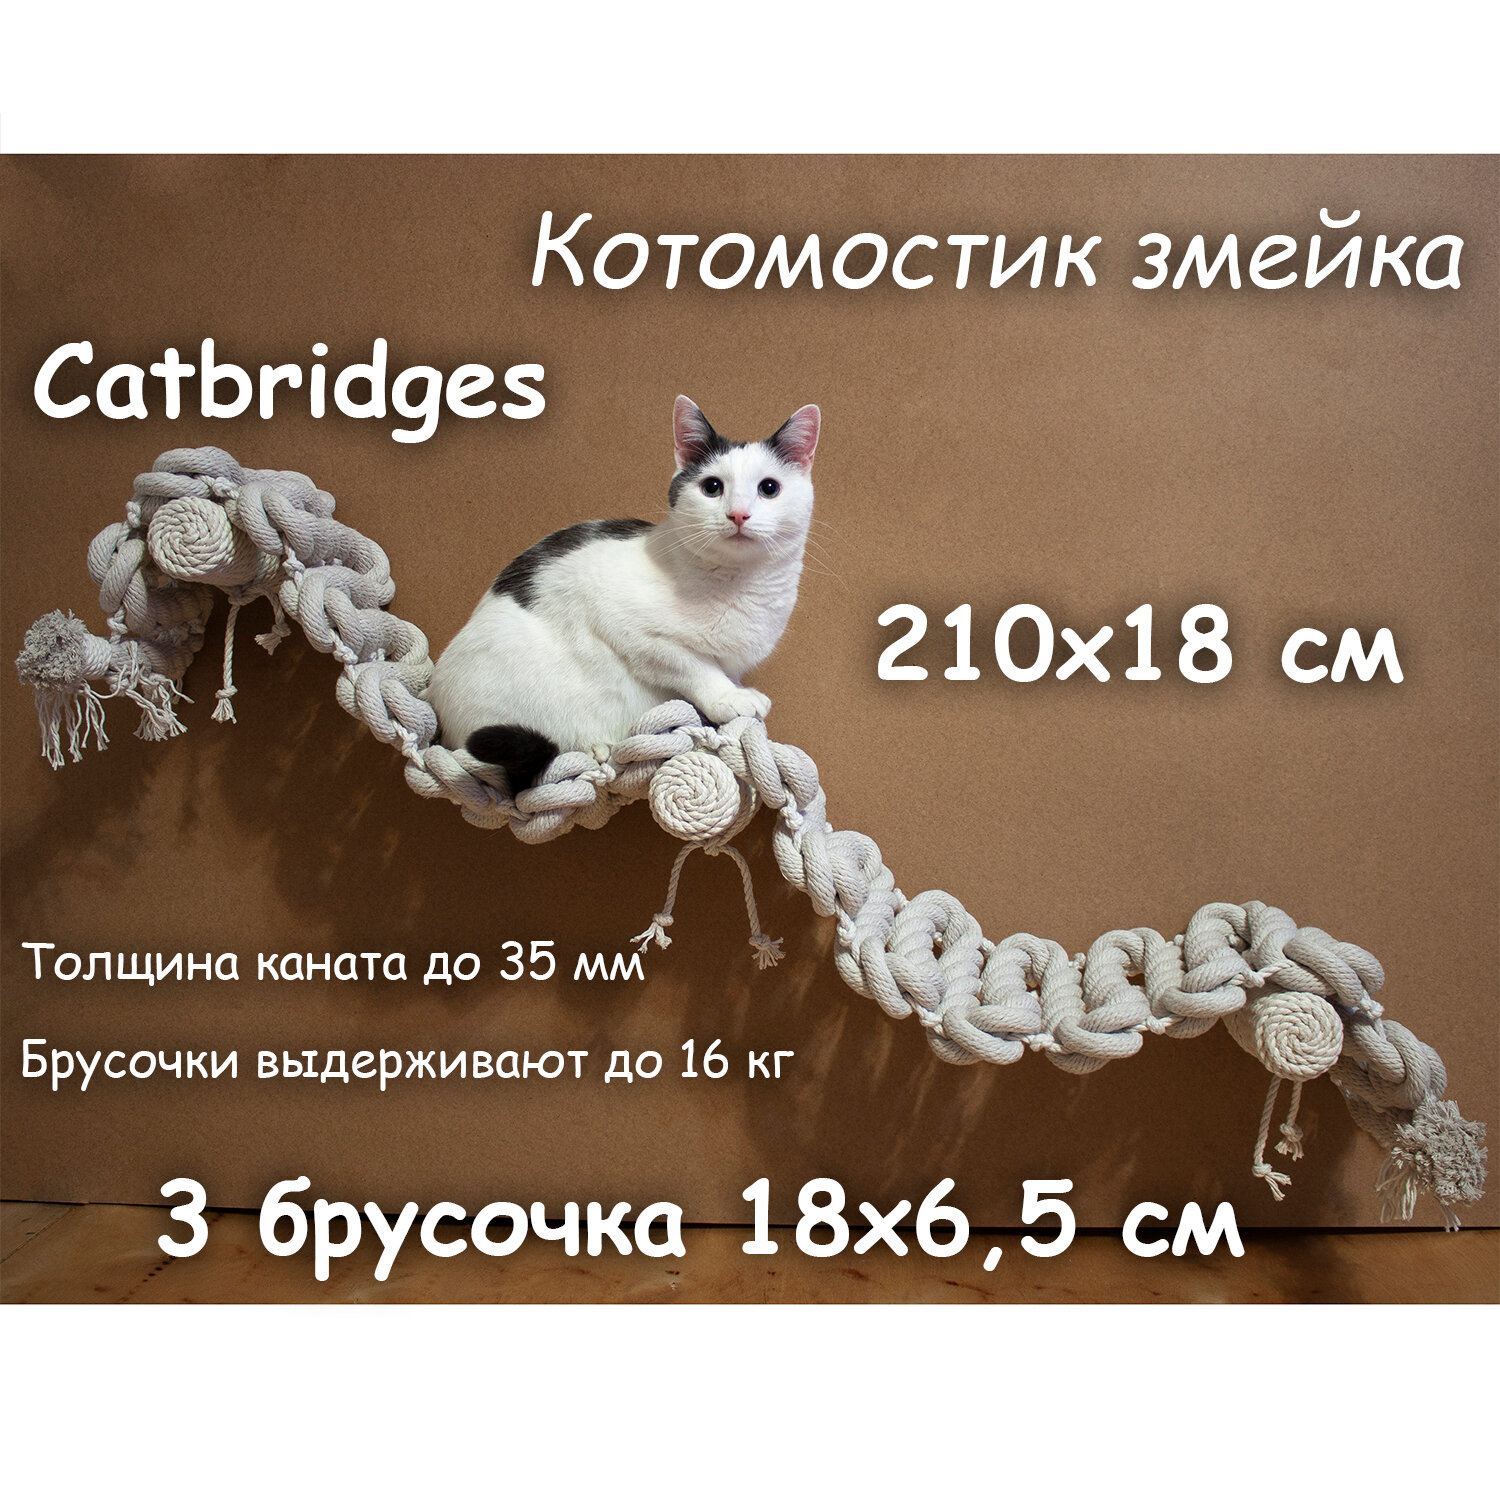 Когтеточка для кошки из хлопка . 210х18 см, 3 брусочка . канат 32 мм, шпилька 8 мм . Котомостик Змейка от Catbridges . Белый . Лежанка .